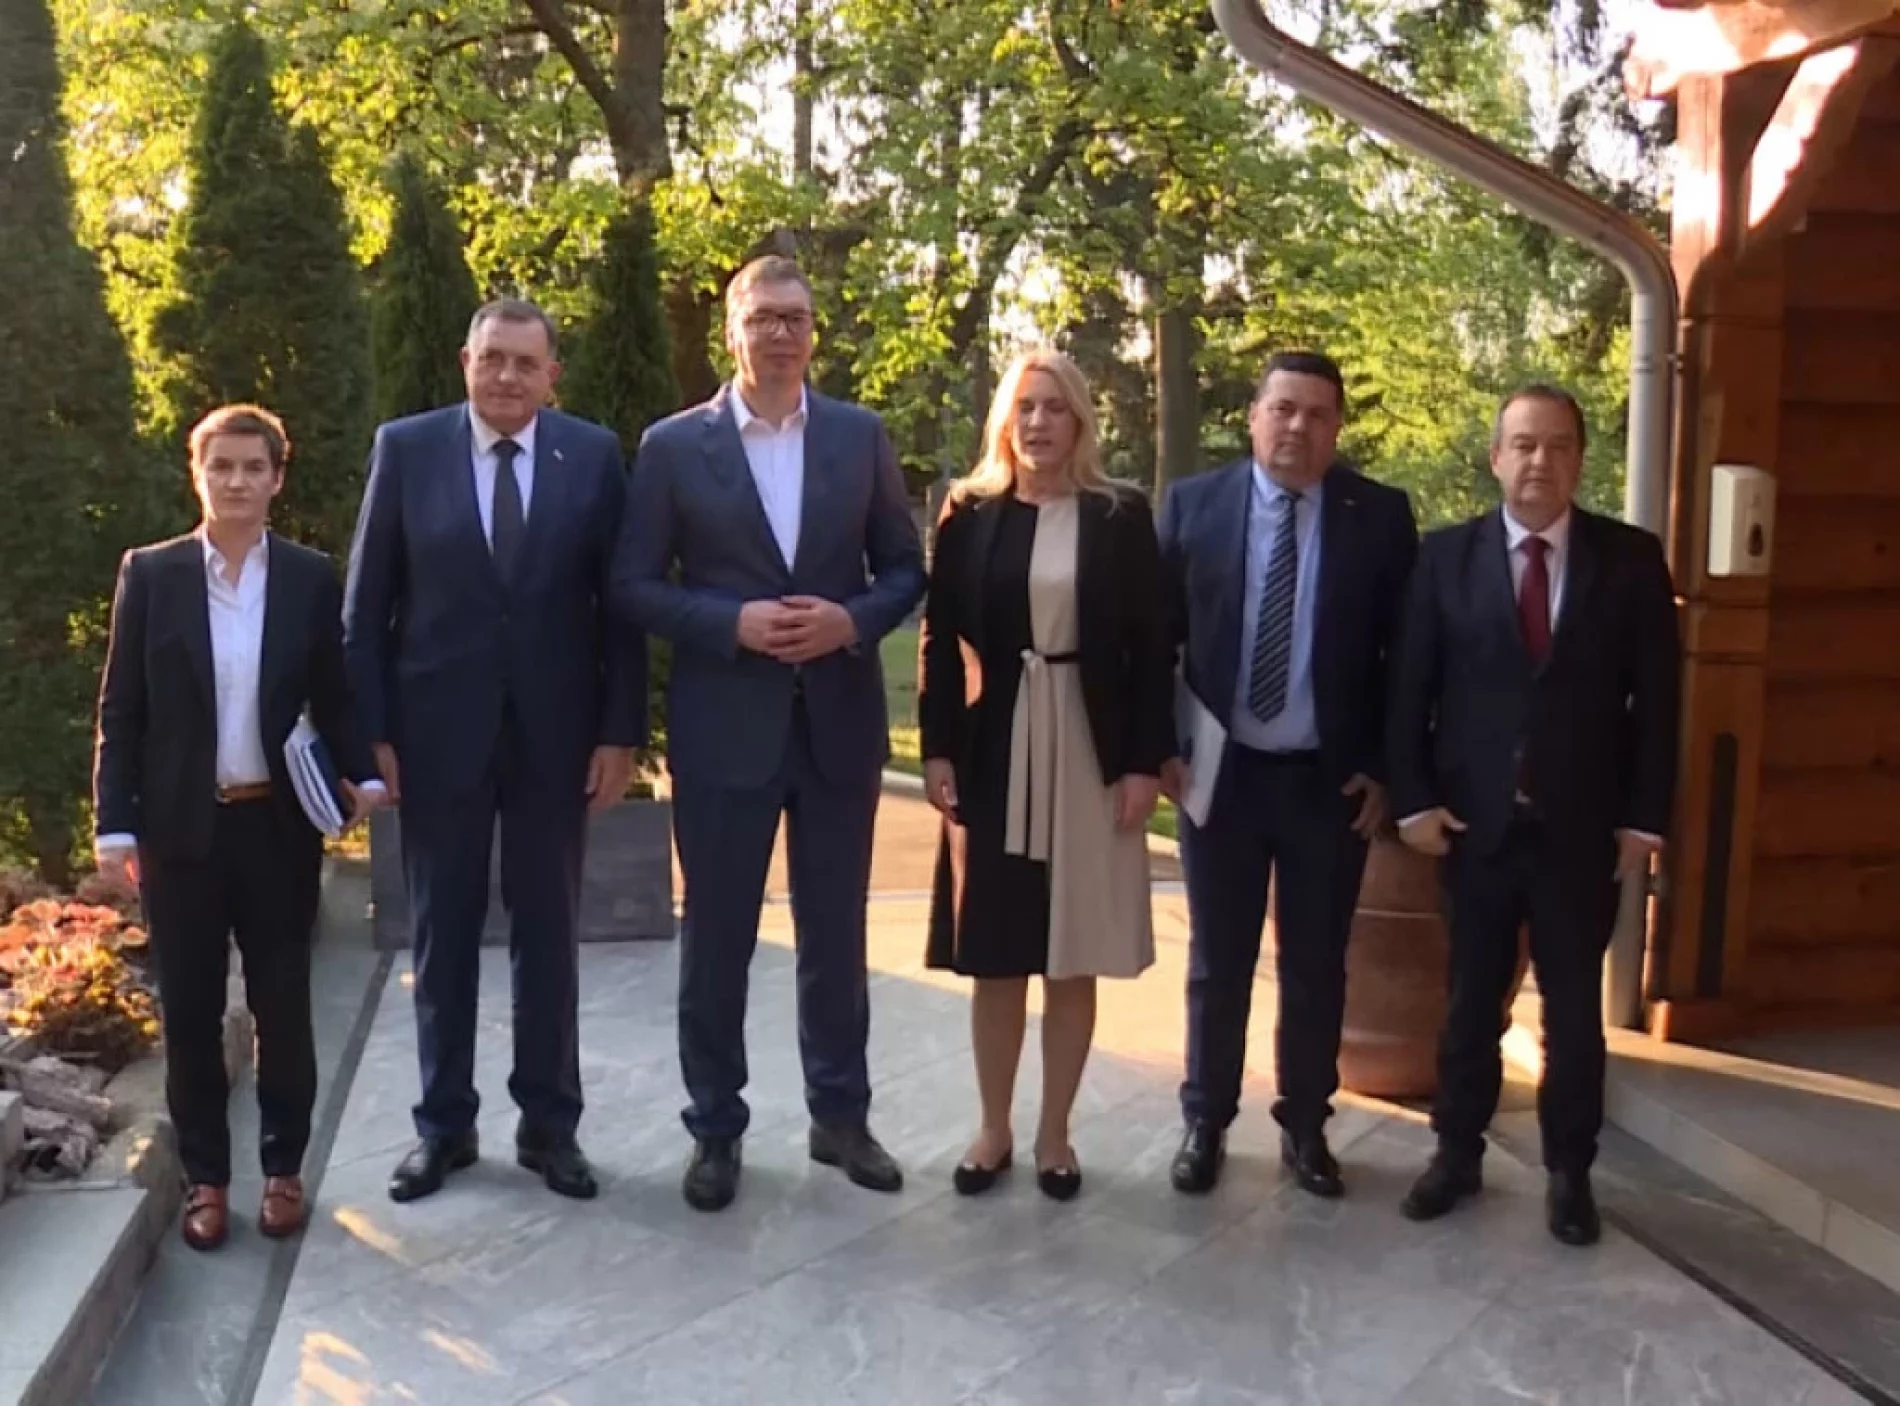 Sastanak u Beogradu – Vučić, Brnabić i Dačić sastali su se sa Dodikom, Cvijanović i Stevandićem